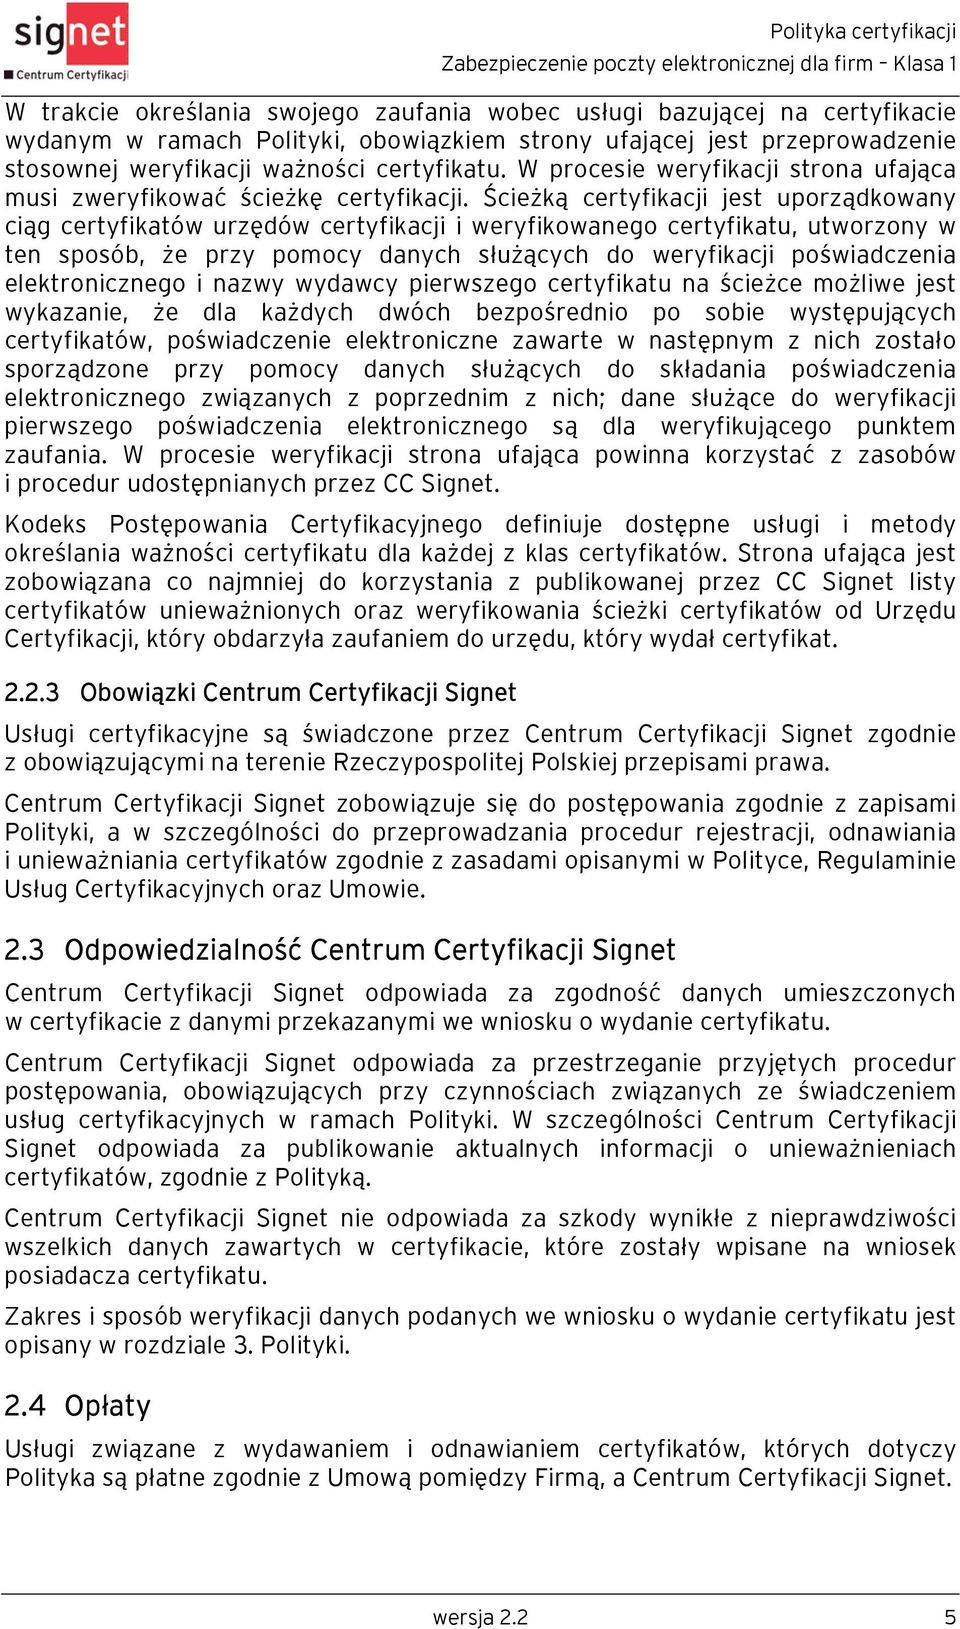 Ścieżką certyfikacji jest uporządkowany ciąg certyfikatów urzędów certyfikacji i weryfikowanego certyfikatu, utworzony w ten sposób, że przy pomocy danych służących do weryfikacji poświadczenia